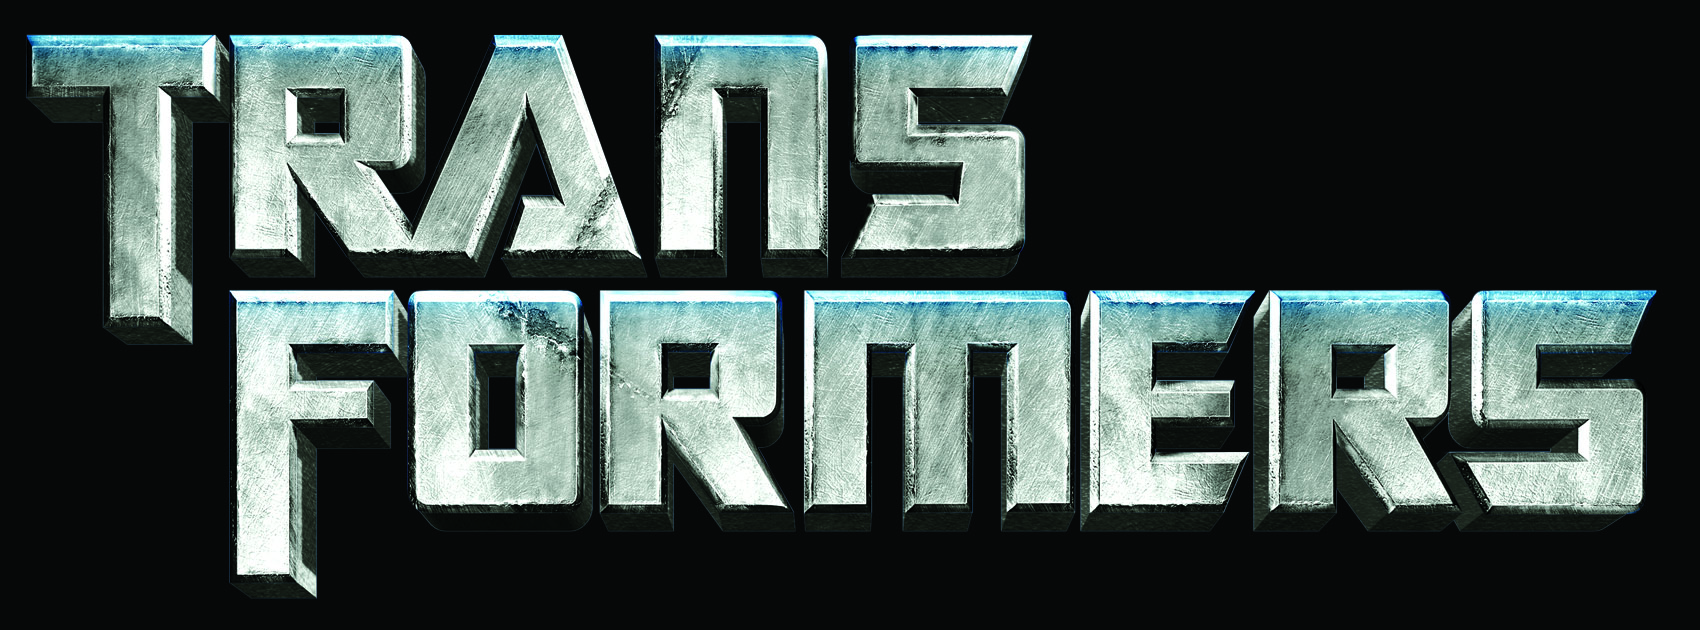 Facebook Word Logo - Logo Transformers Facebook Timeline Cover